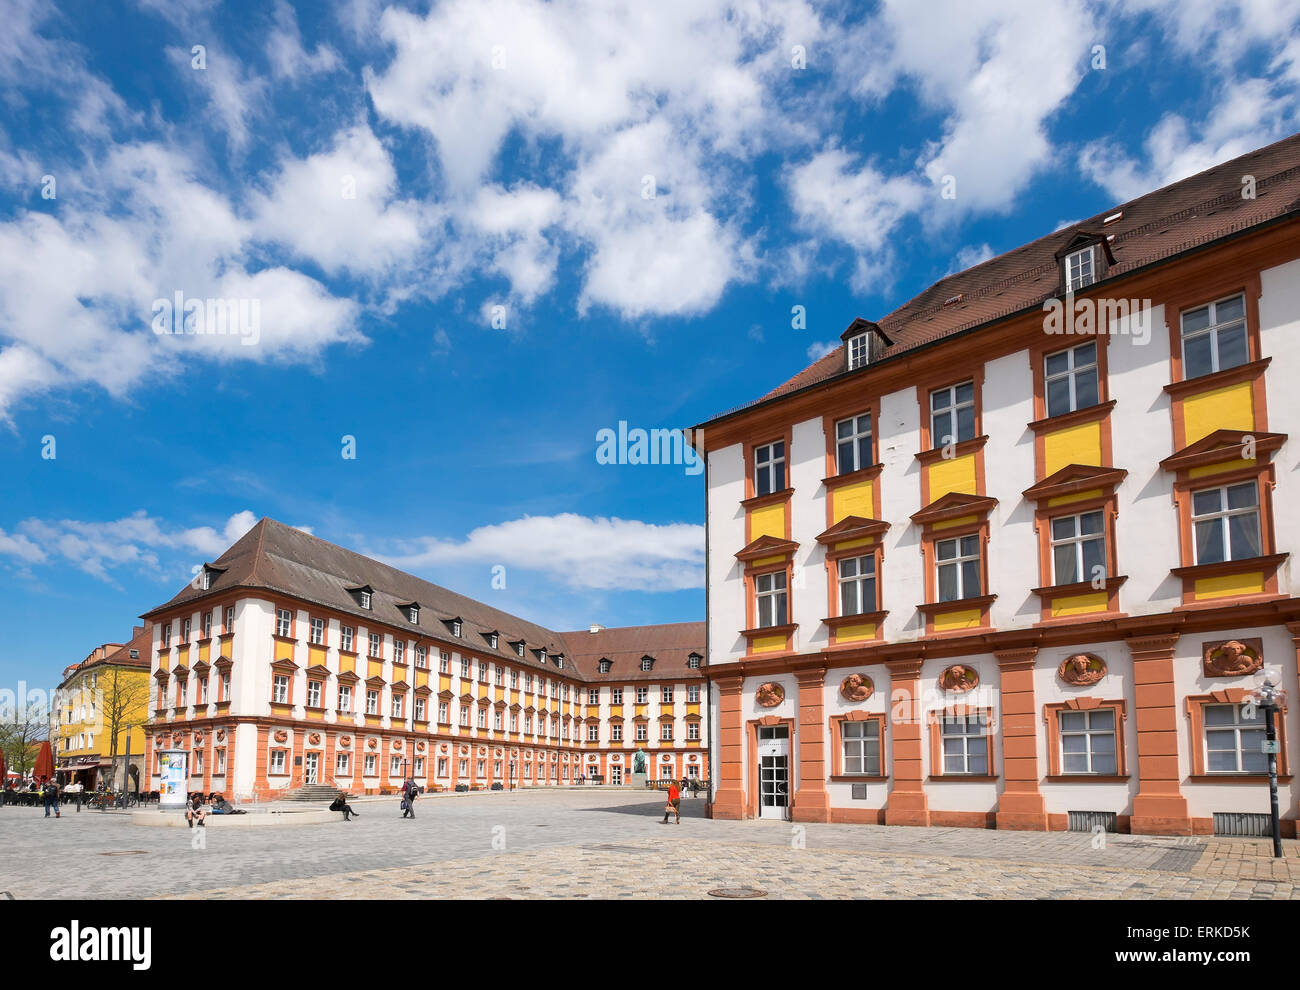 Cortile del castello vecchio e storico centro di Bayreuth, Alta Franconia, Franconia, Baviera, Germania Foto Stock